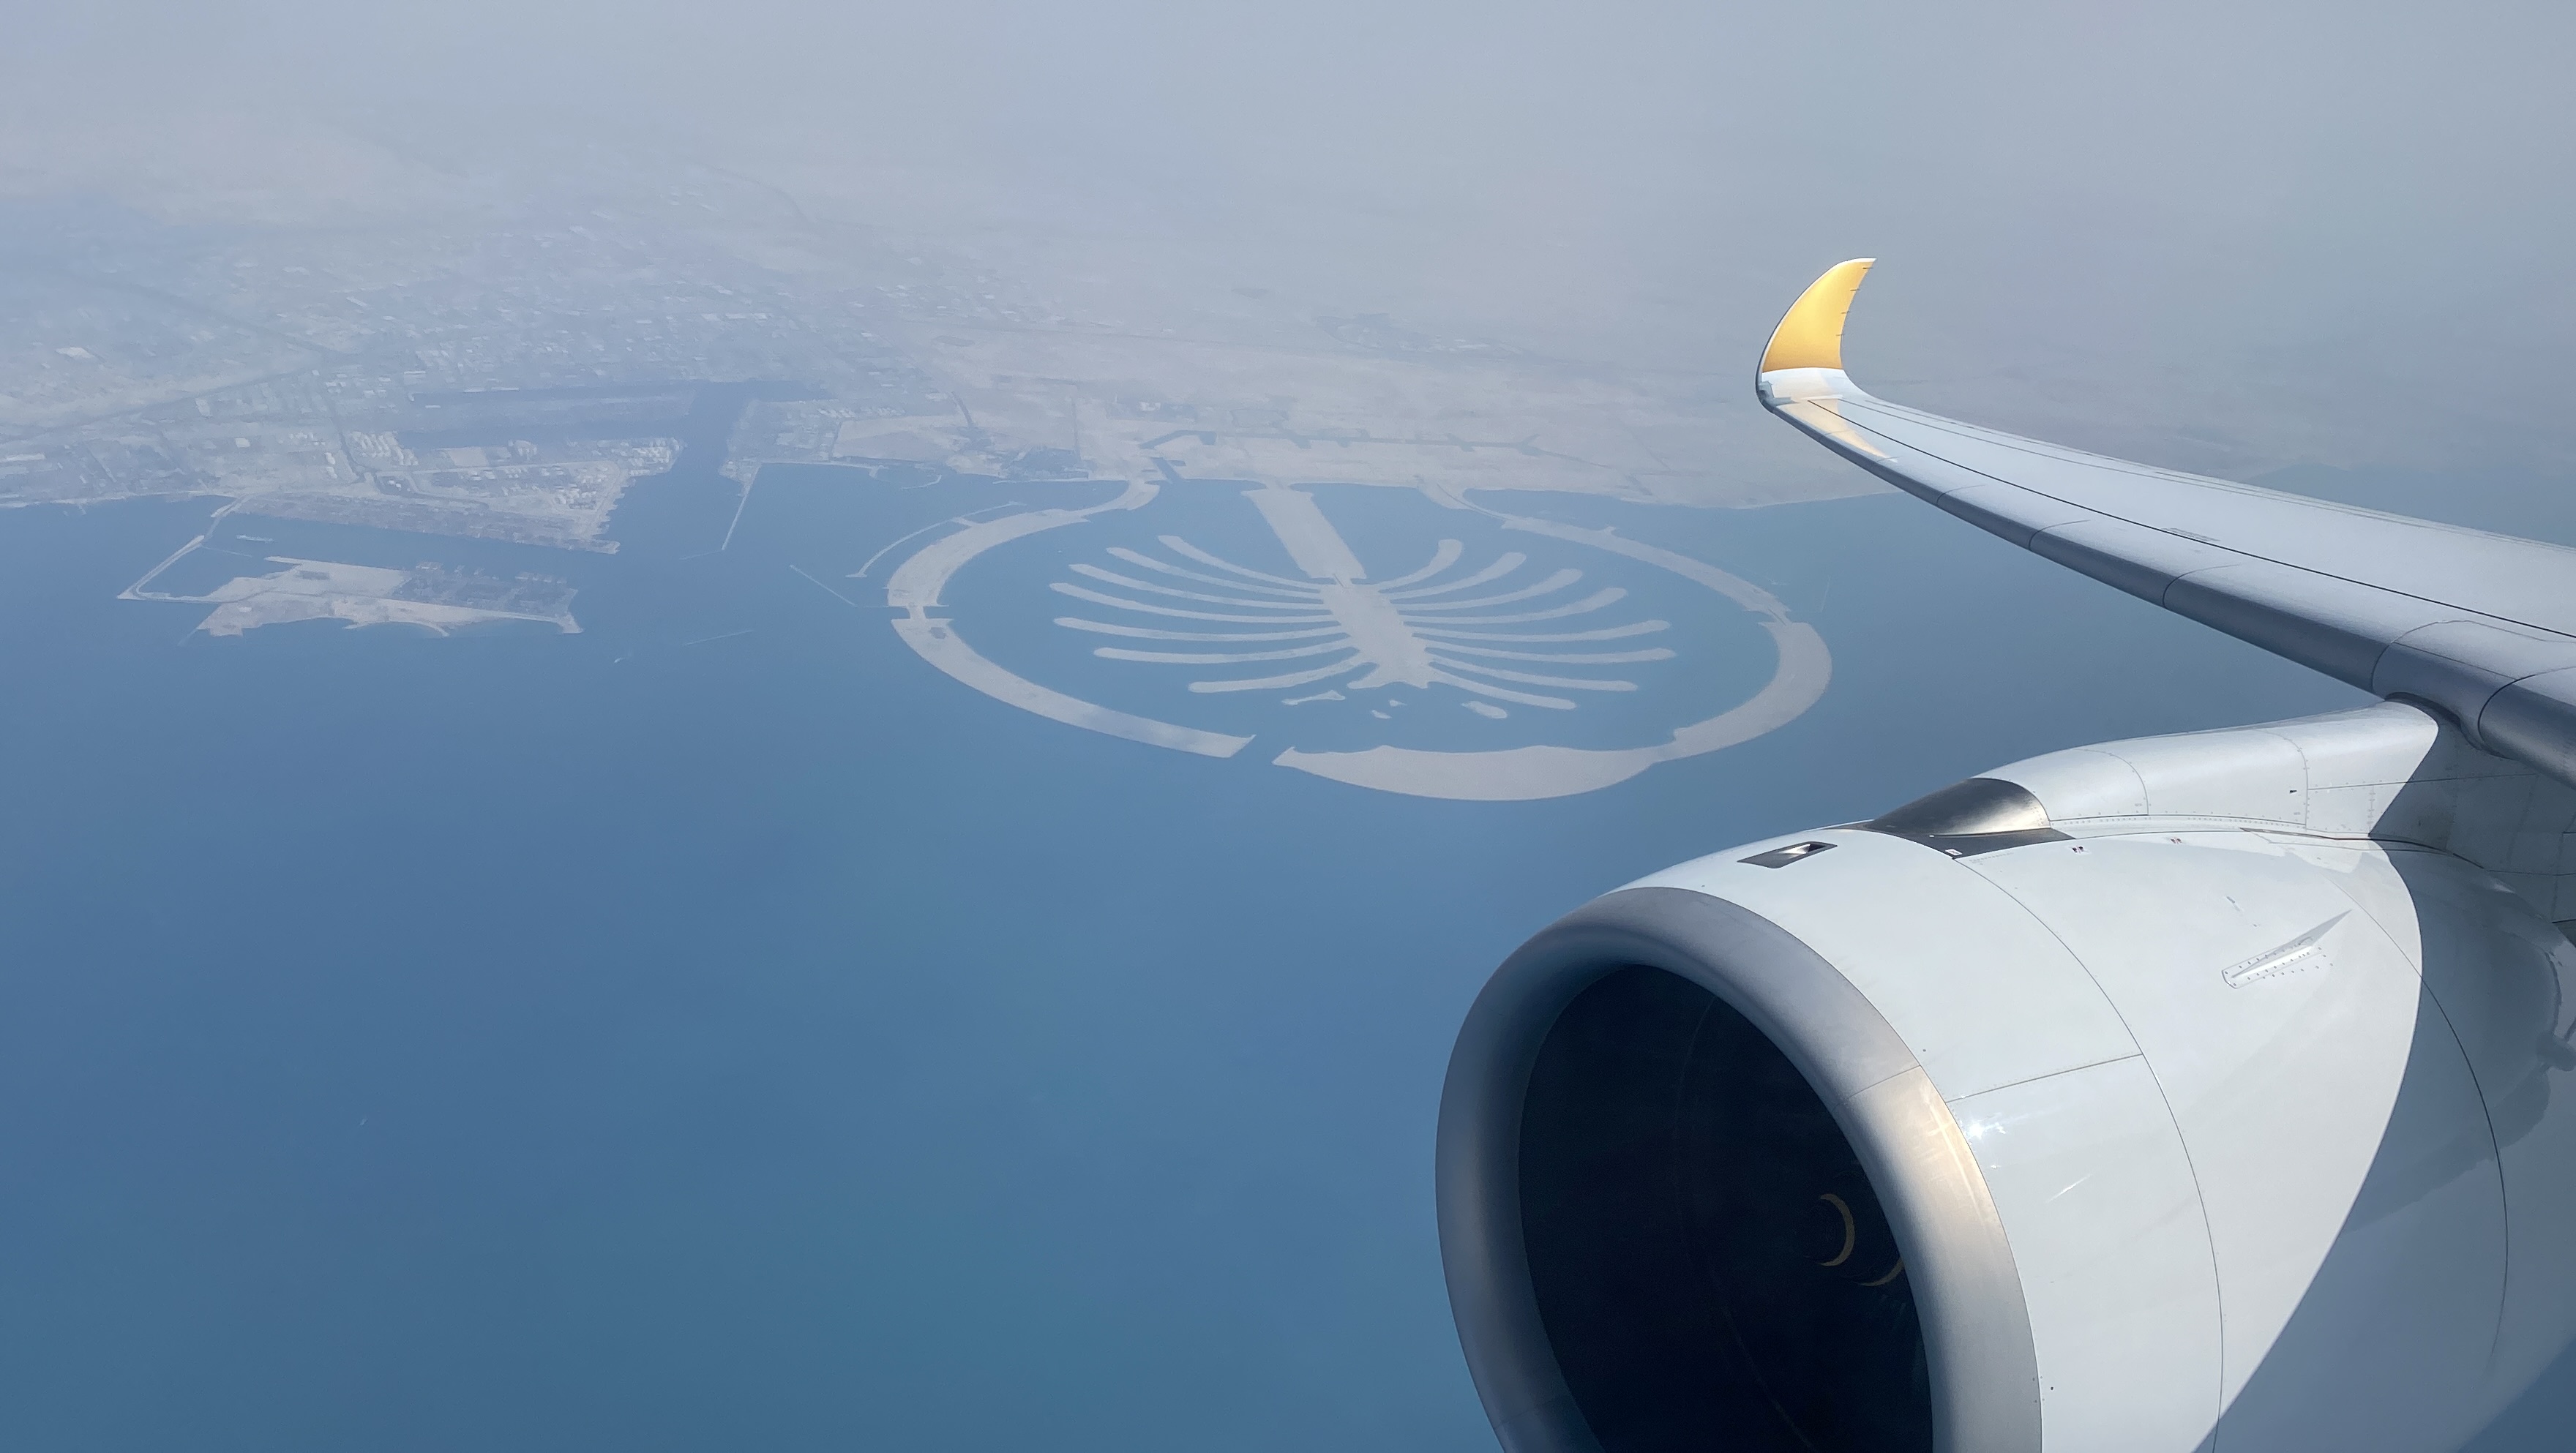 Flying over Dubai